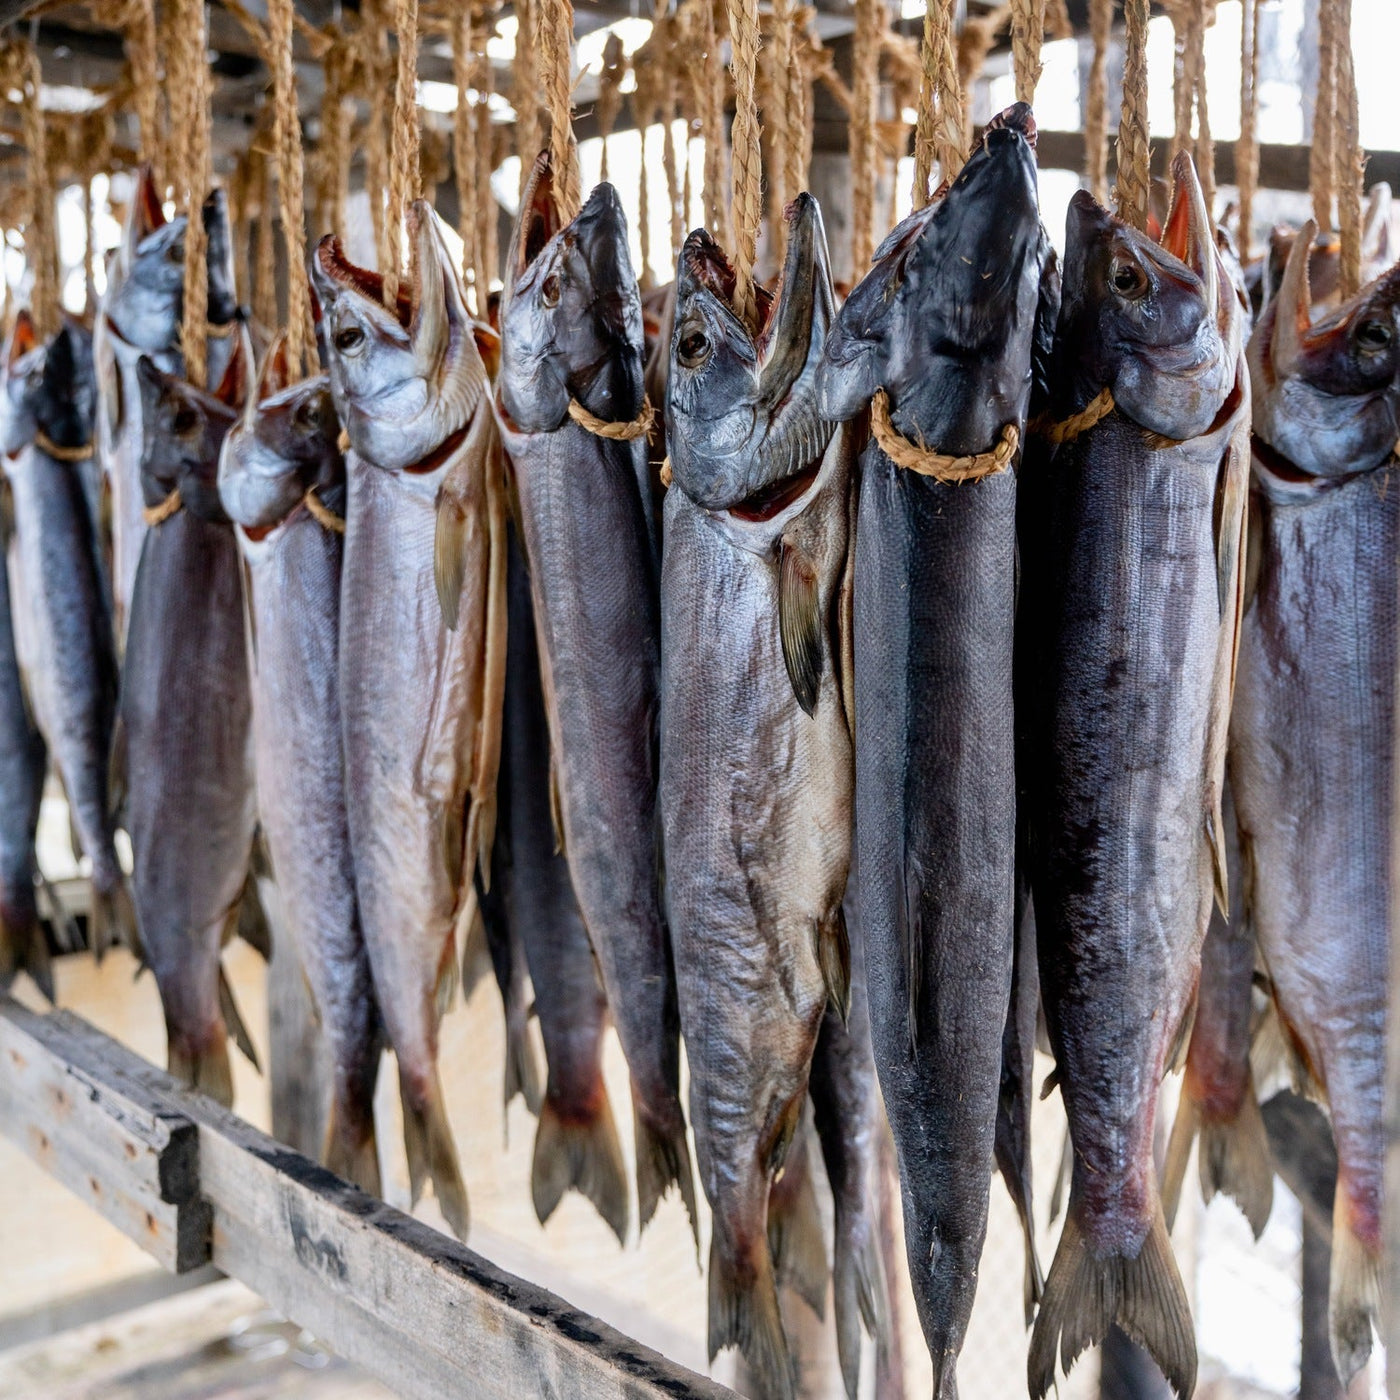 マルトシ吉野商店の鮭寿,潮風で鮭を干す,寒風やぐら干し山漬け鮭,けいじゅ